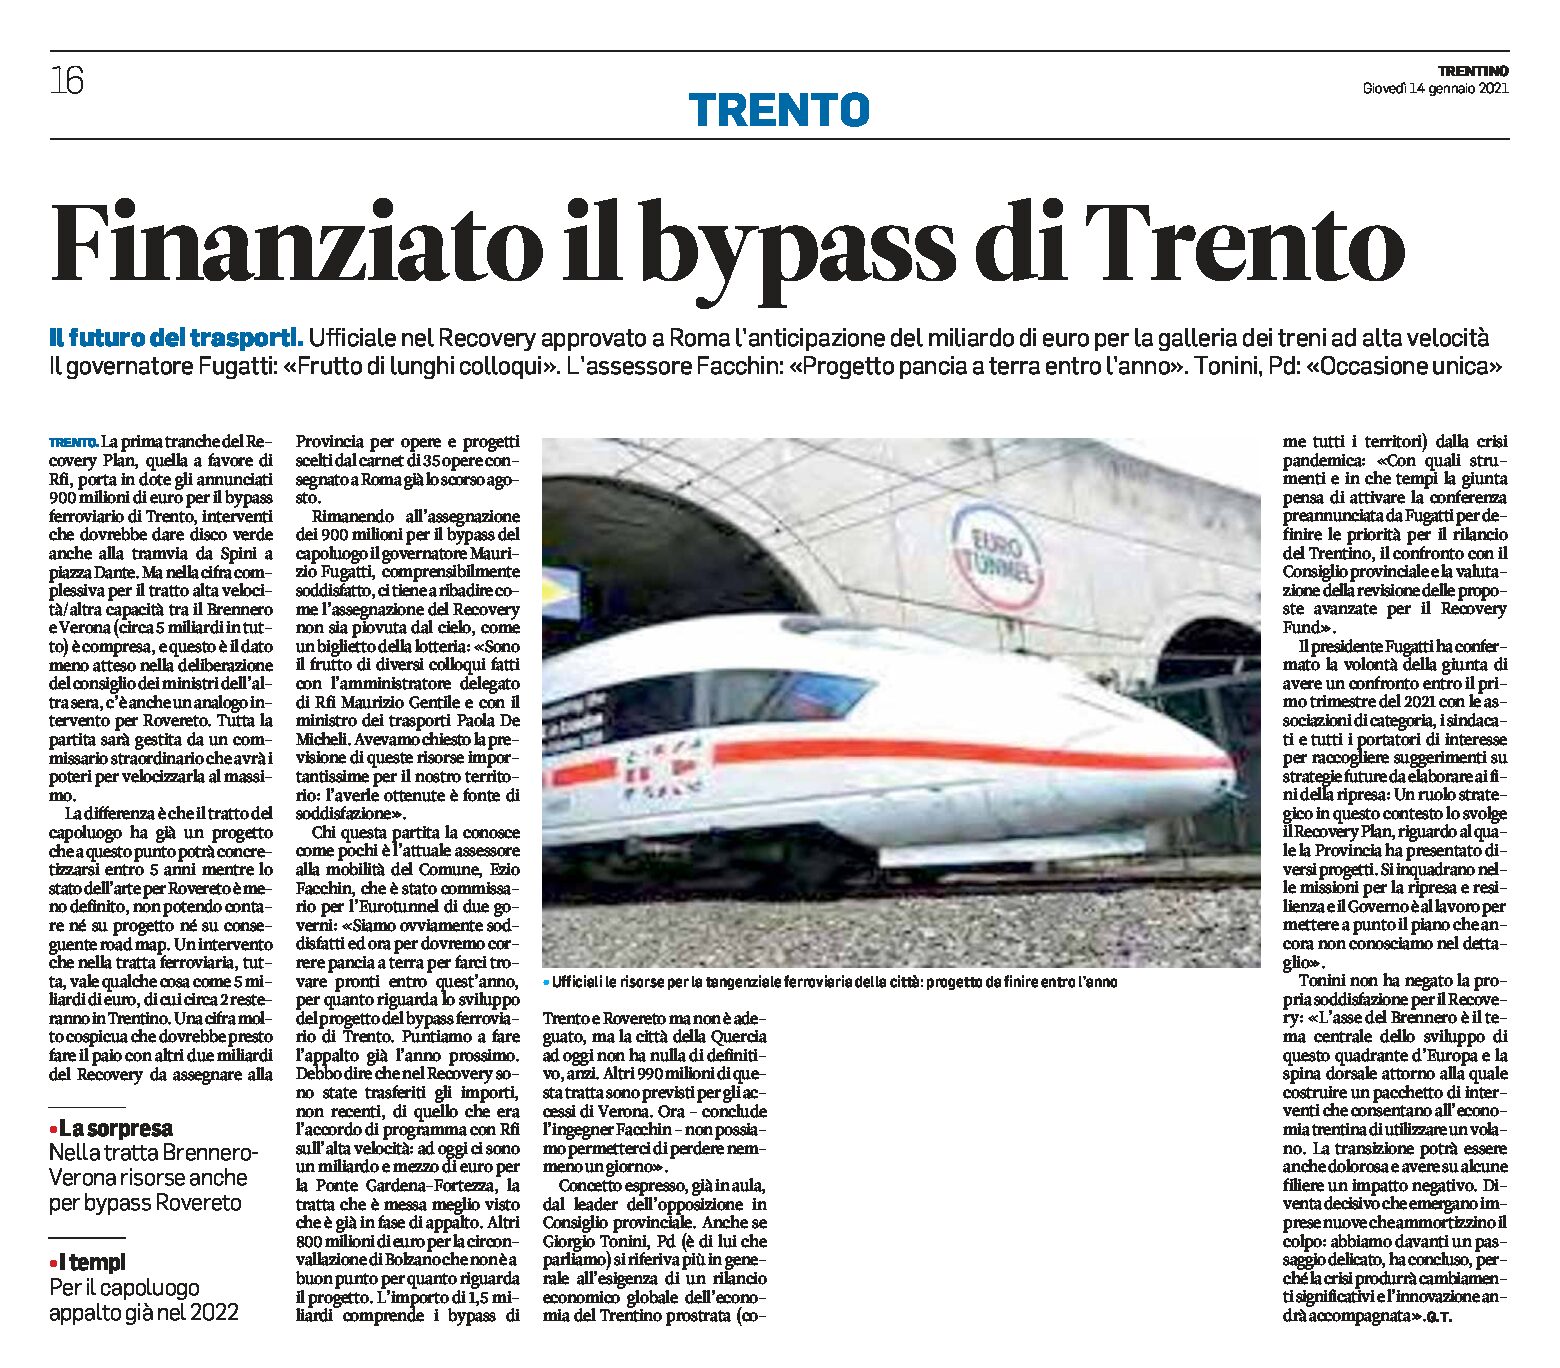 Trasporti: finanziato il bypass ferroviario di Trento